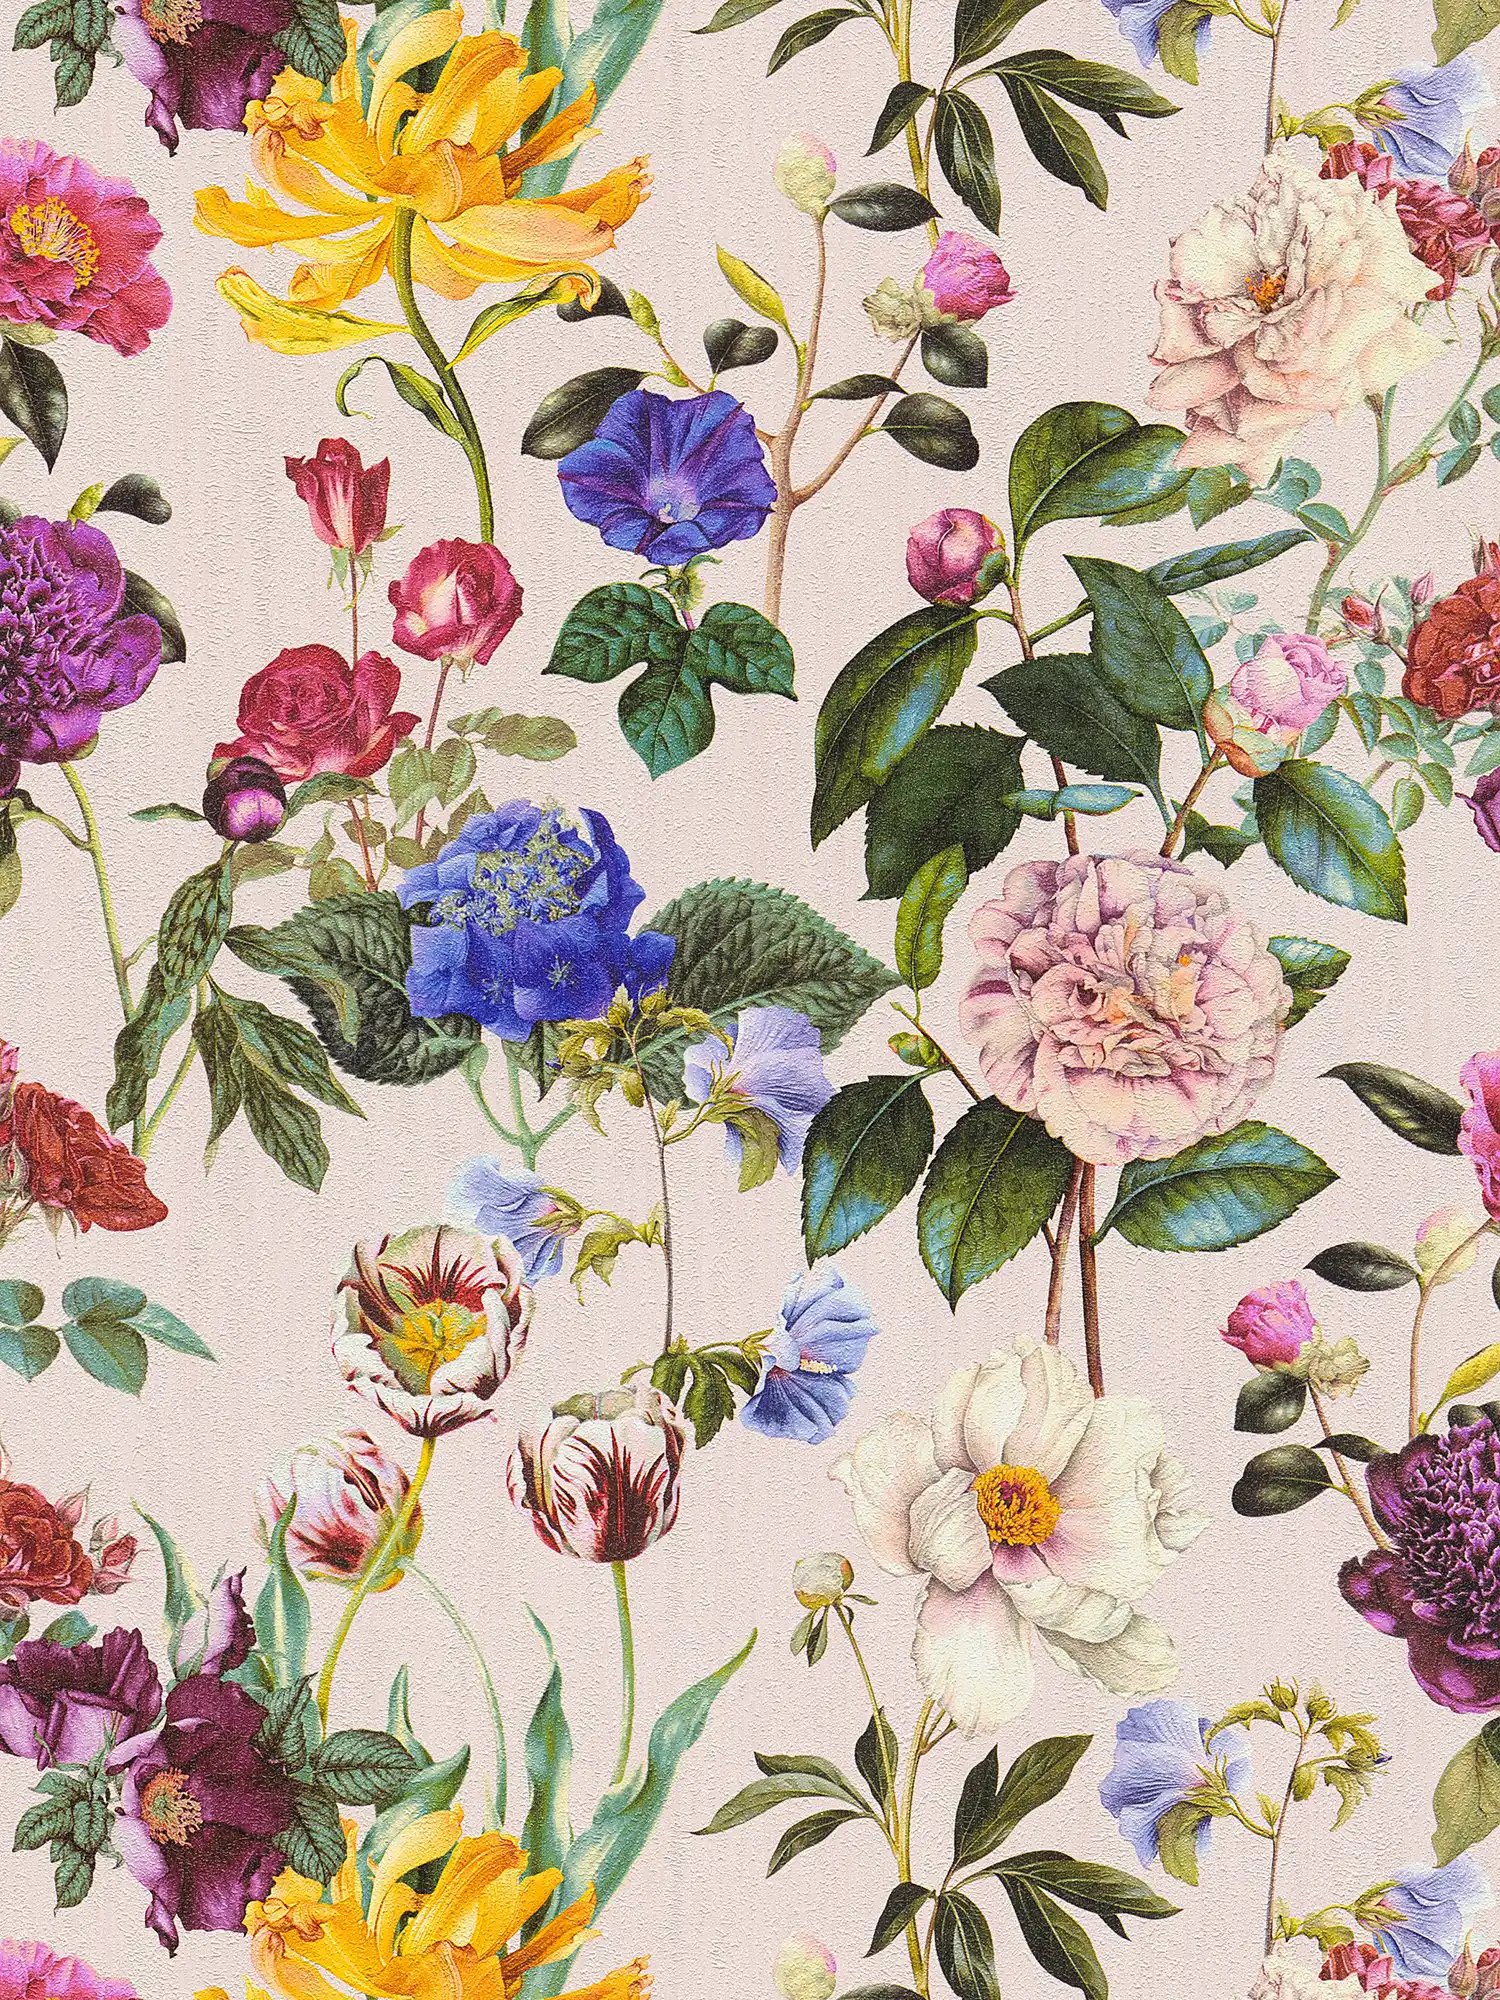         Blüten-Tapete mit Blumen in leuchtenden Farben – Bunt, Grün, Rosa
    